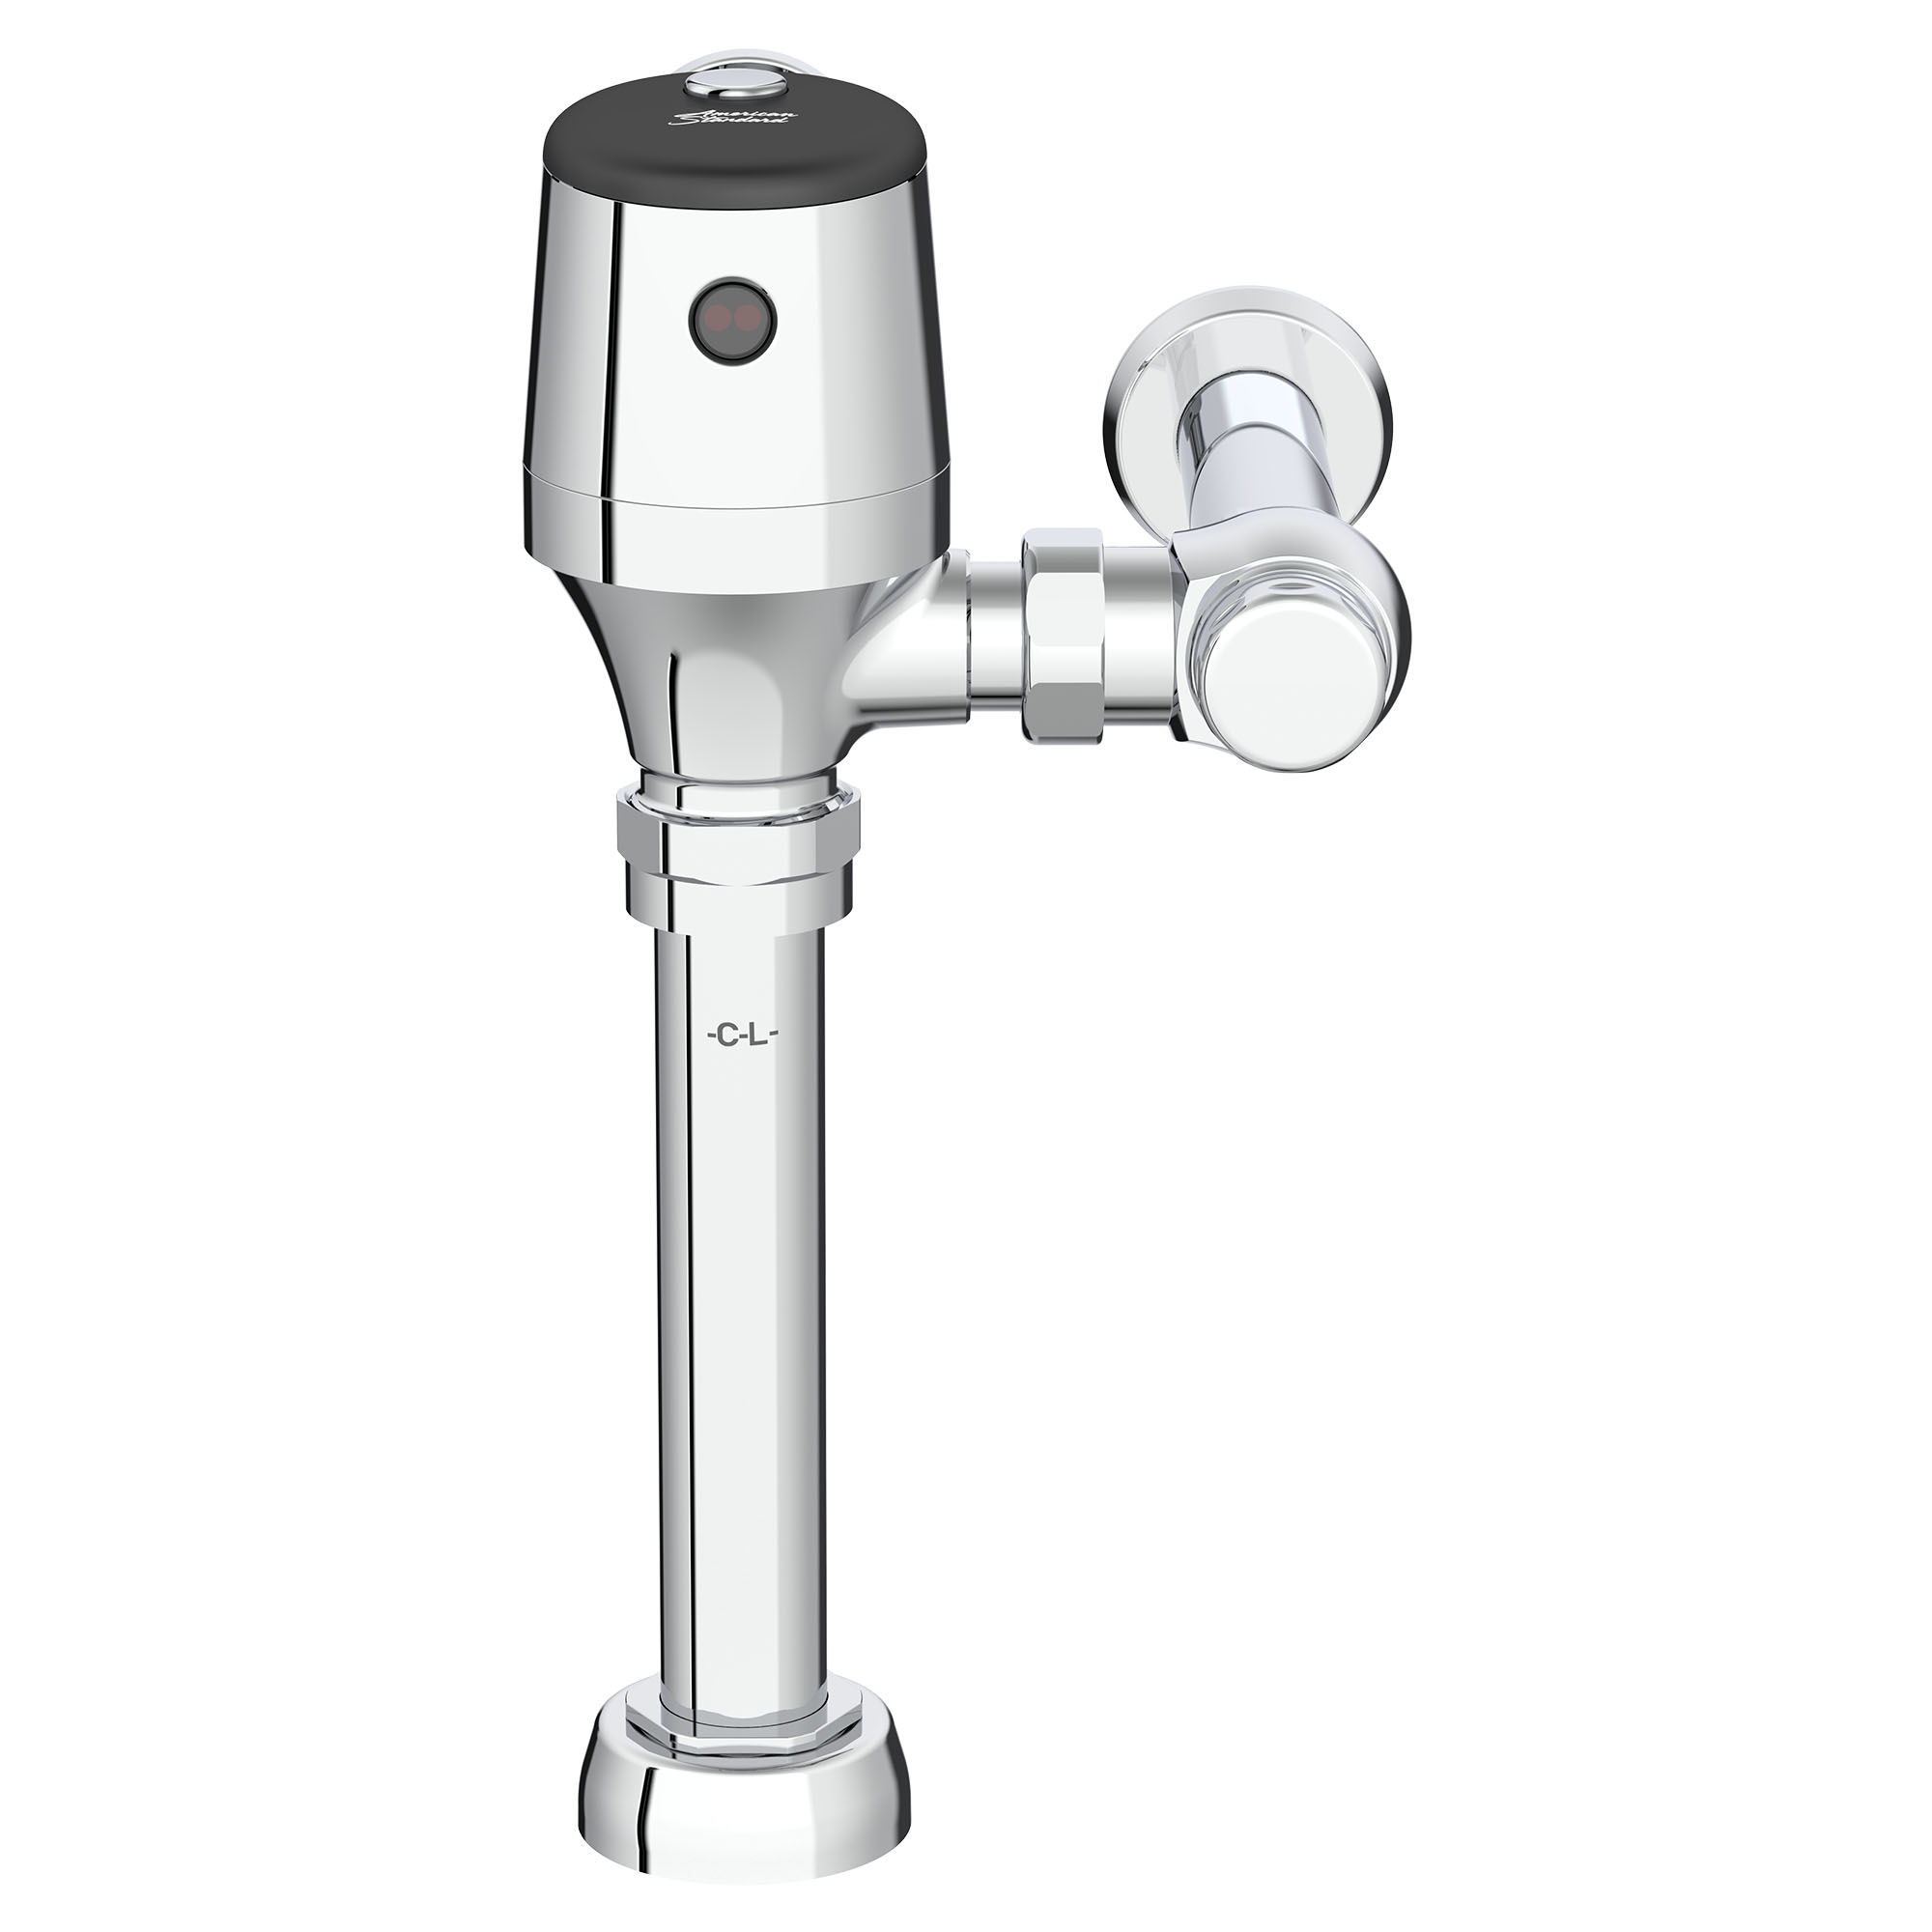 Robinet de chasse d'eau pour toilettes exposées UltimaMC SelectronicMC, à diaphragme, modèle de base,1, 28 gpc (4,8 Lpc)